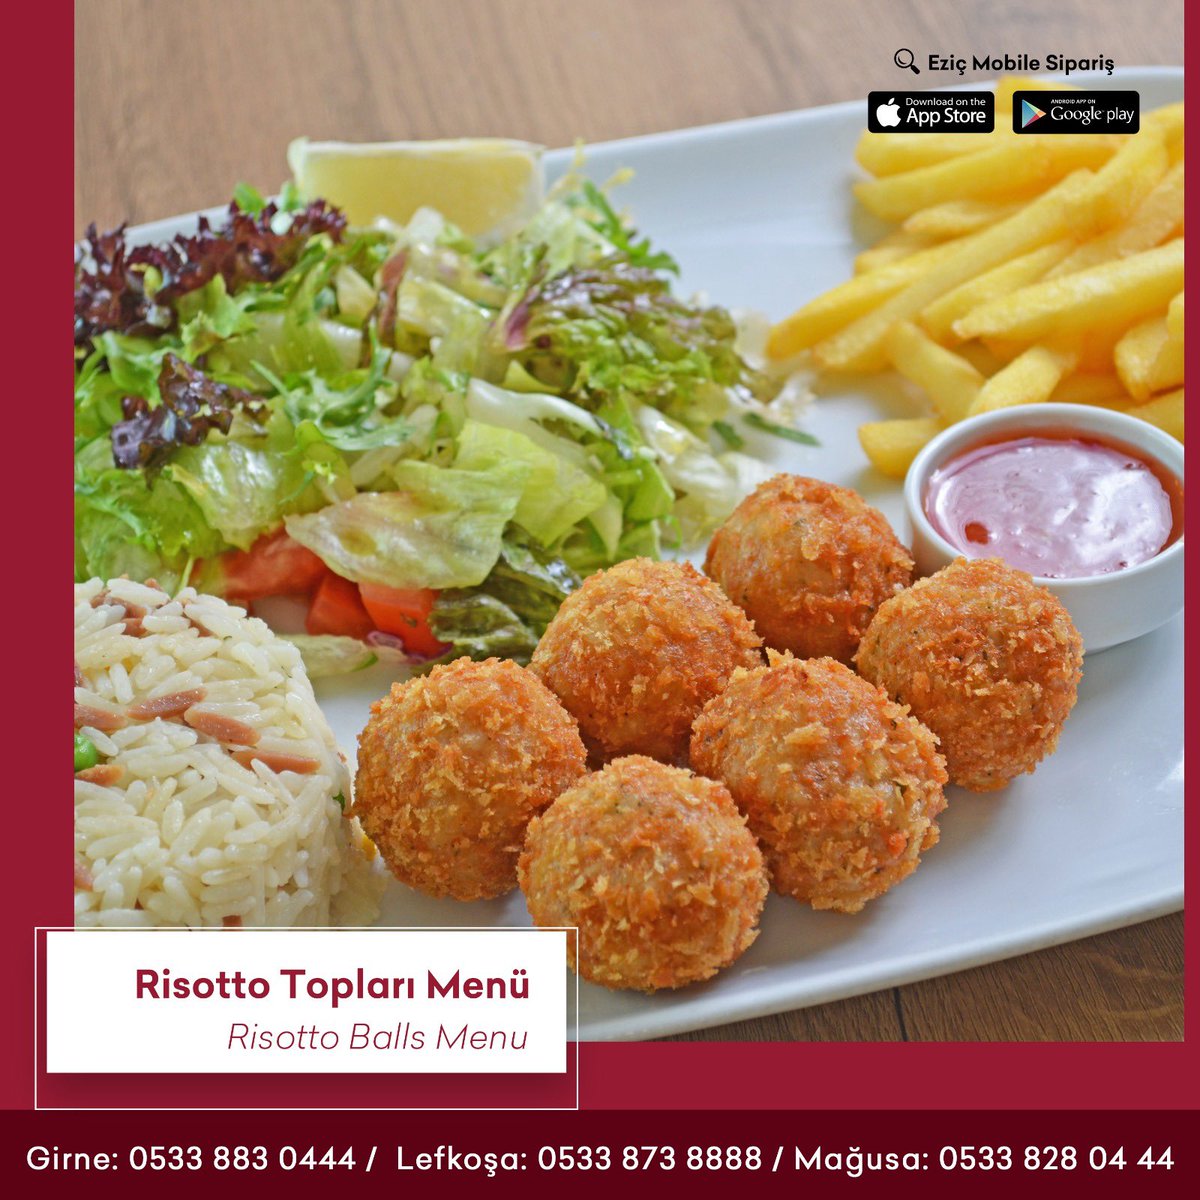 Pirinç ve özel baharatlarla harmanlanmış tavuk topları 😍 #risotto #risottoballs #cyprus #eziçrestaurant